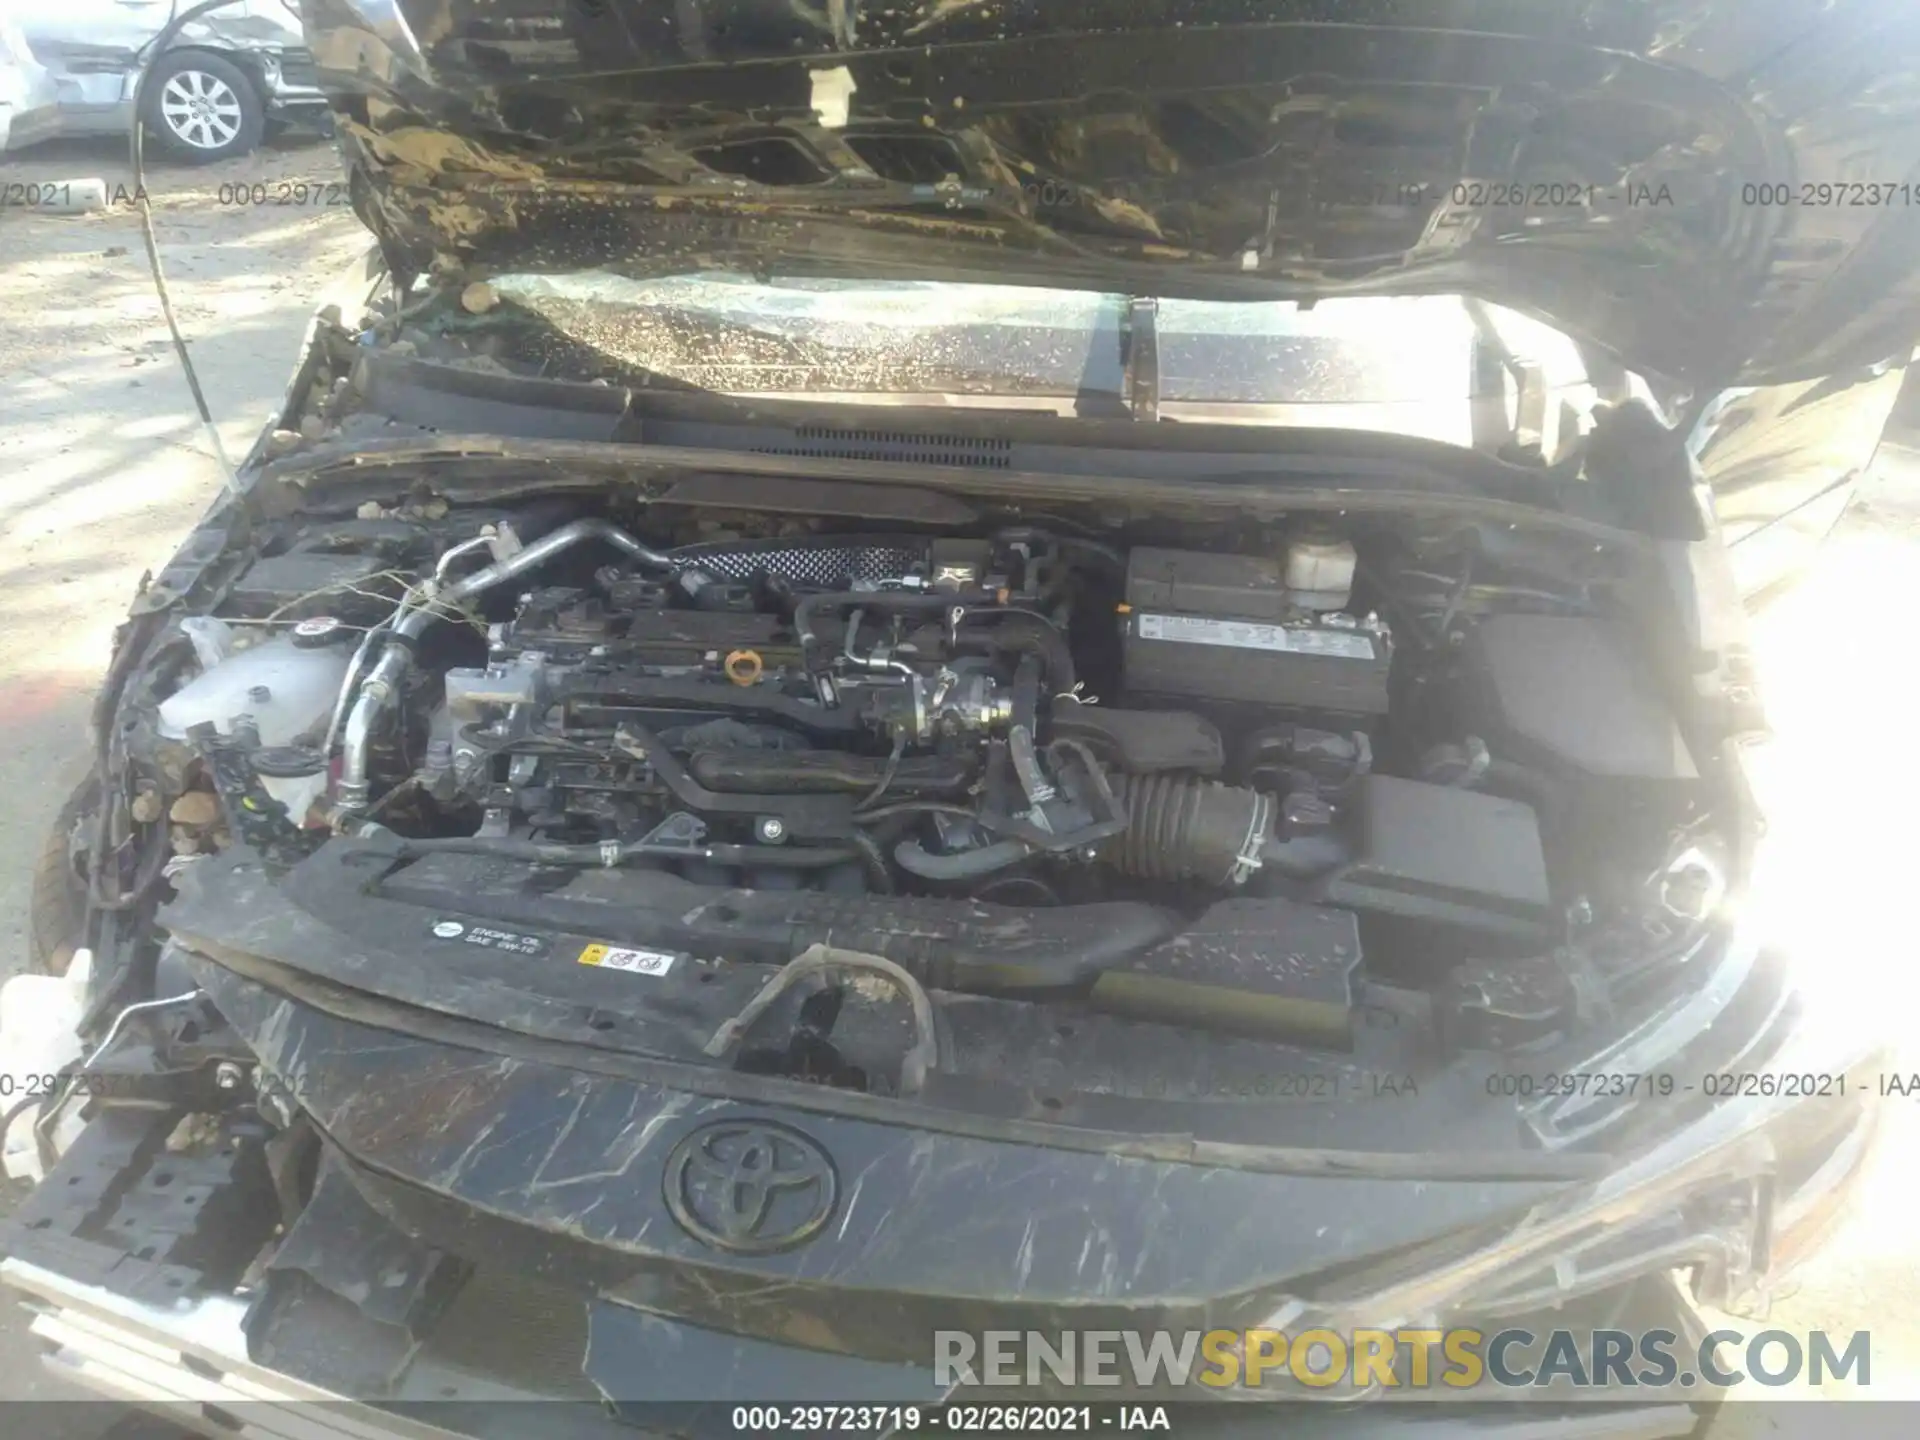 10 Photograph of a damaged car 5YFS4MCE0MP059007 TOYOTA COROLLA 2021